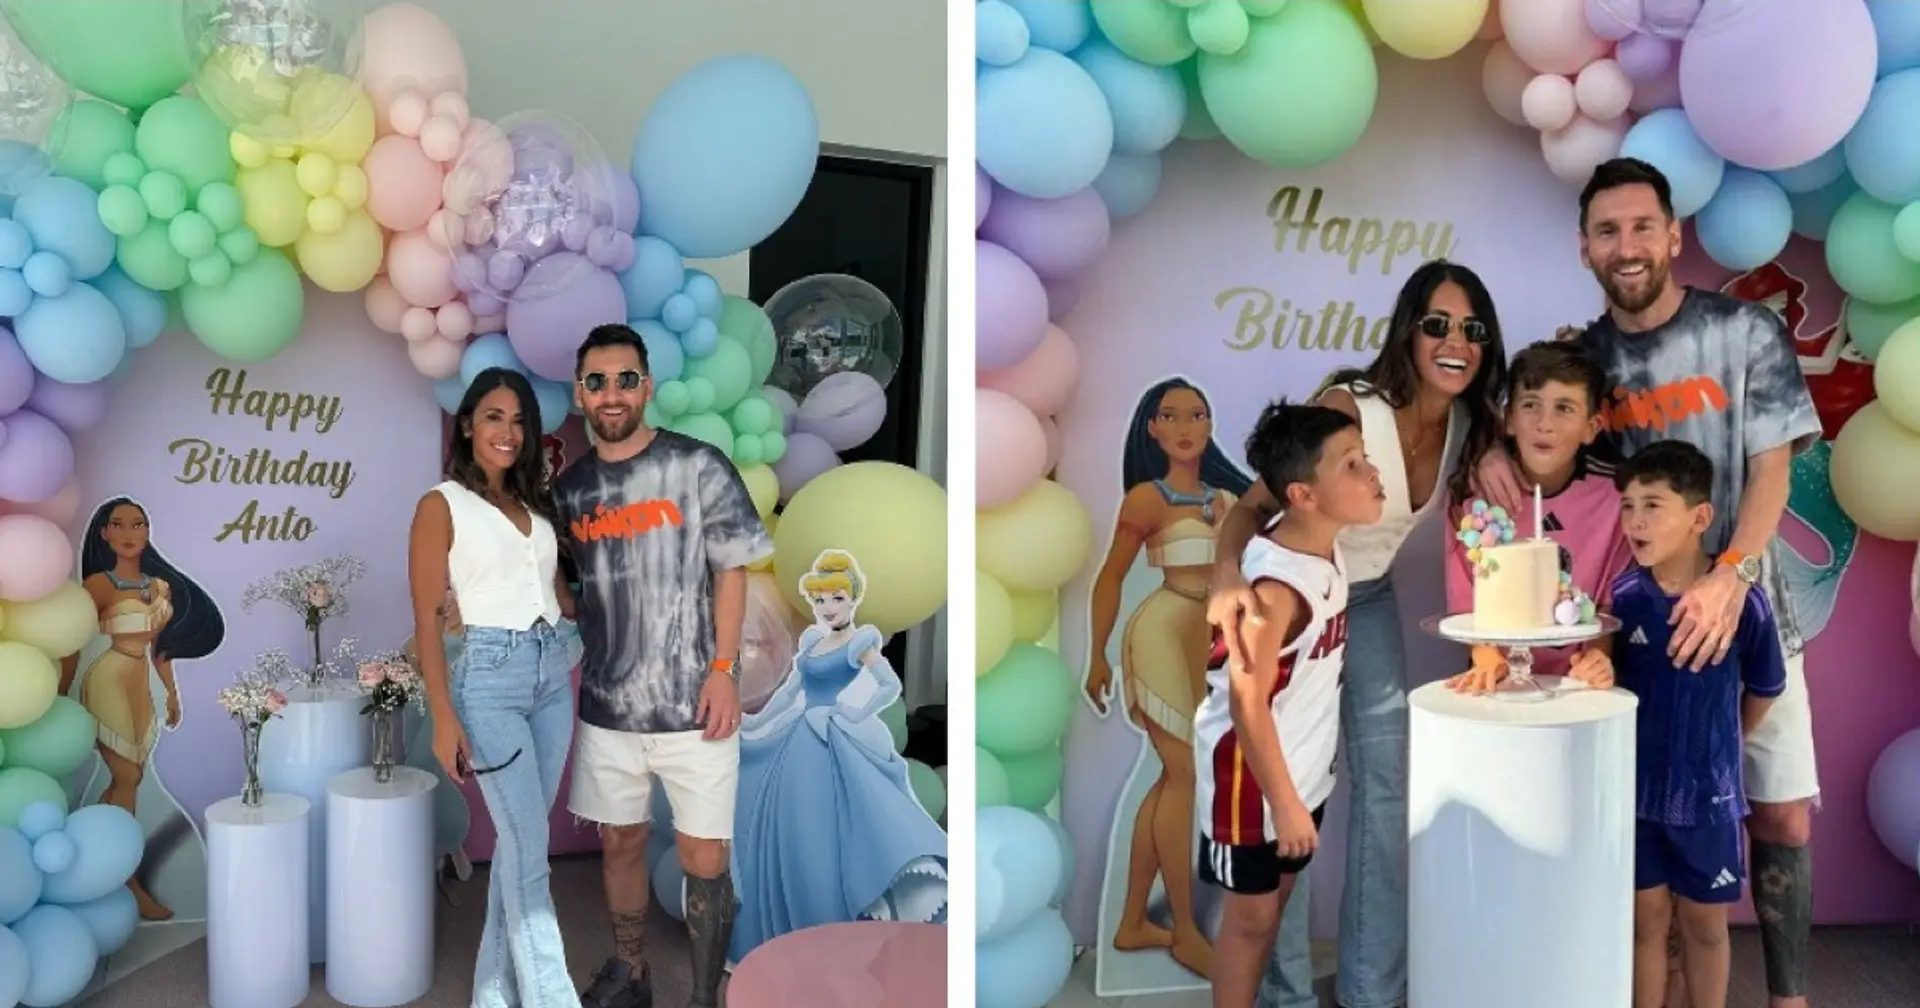 Die Frau von Leo Messi ist 36! Sie feierte den Geburtstag mit ihrer Familie im "Moana"-Stil 